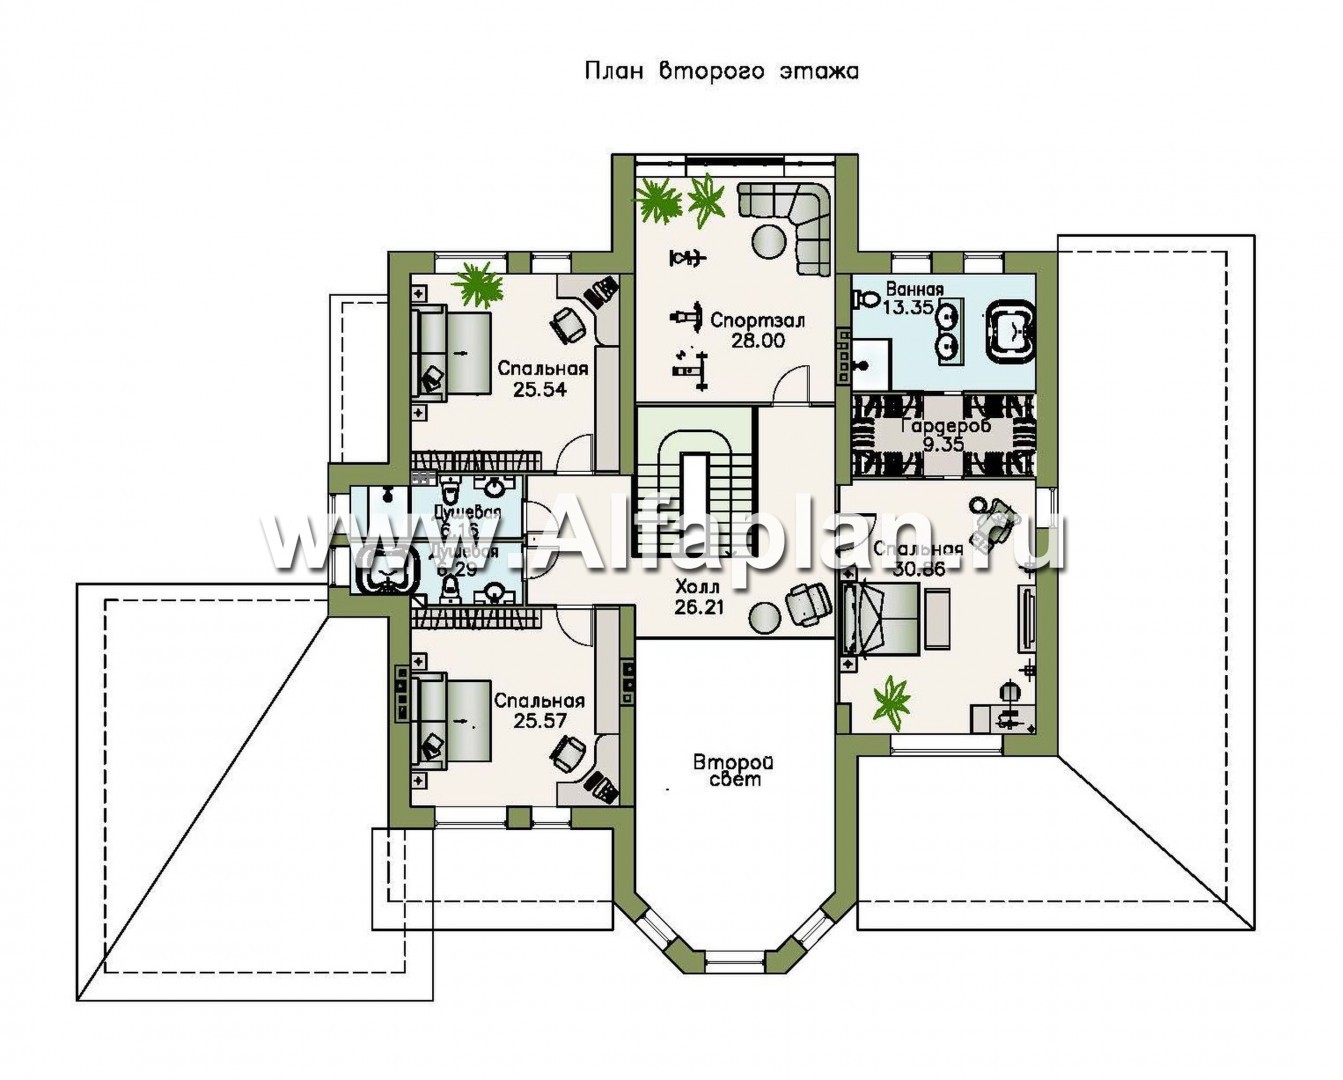 «Пятьсот квадратов» - проект двухэтажного дома, с двусветной гостиной и с террасой, гараж на 2 авто, цокольный этаж, вилла в стиле замка - план дома